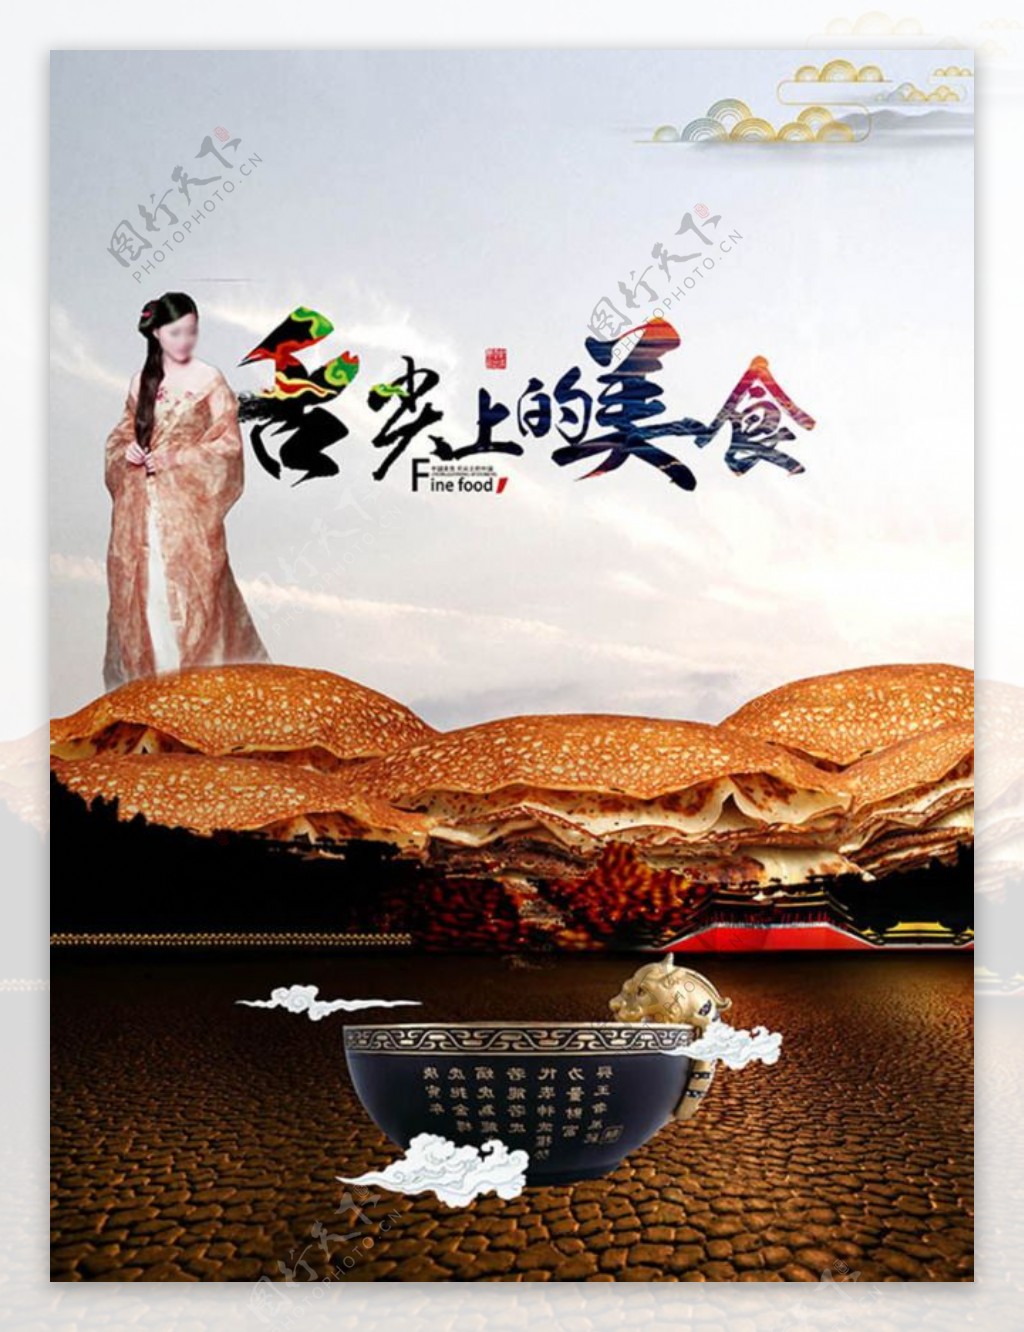 舌尖上的美食创意中国风宣传海报设计